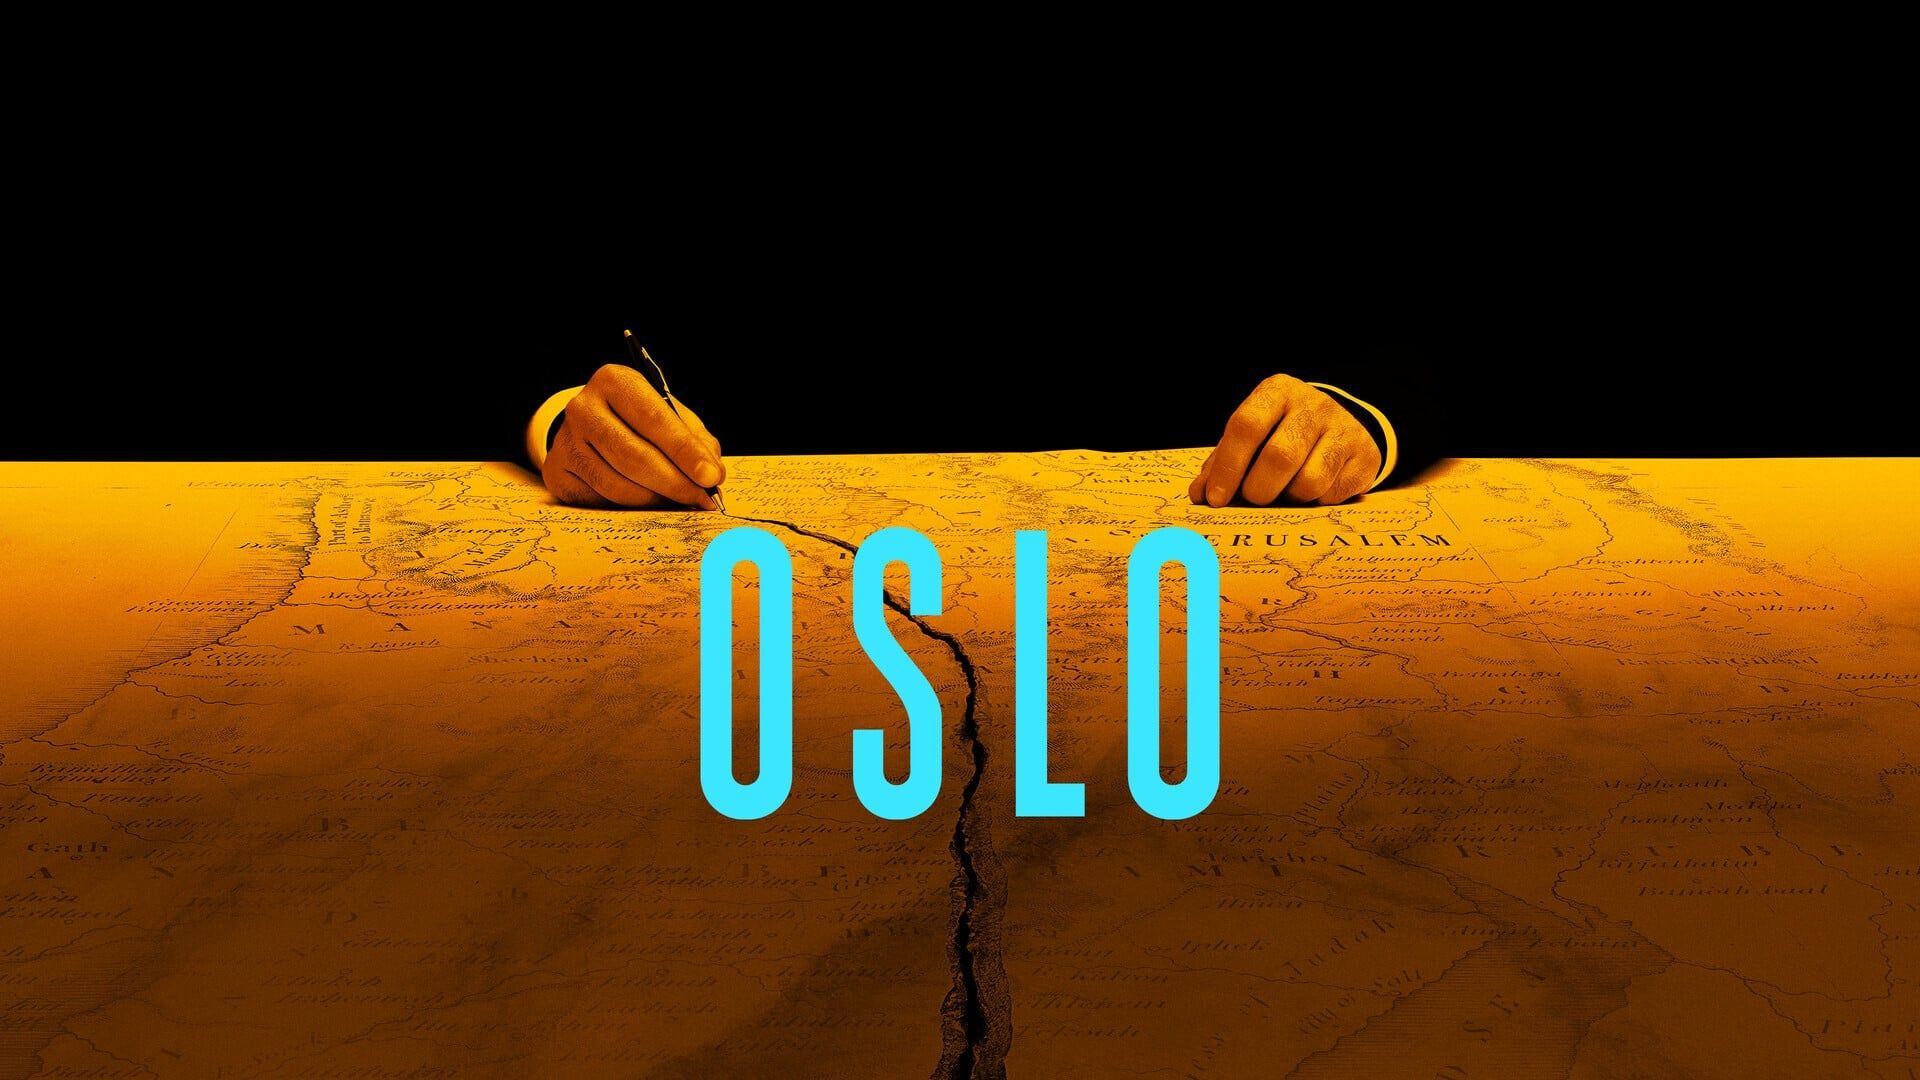 دانلود فیلم Oslo 2021